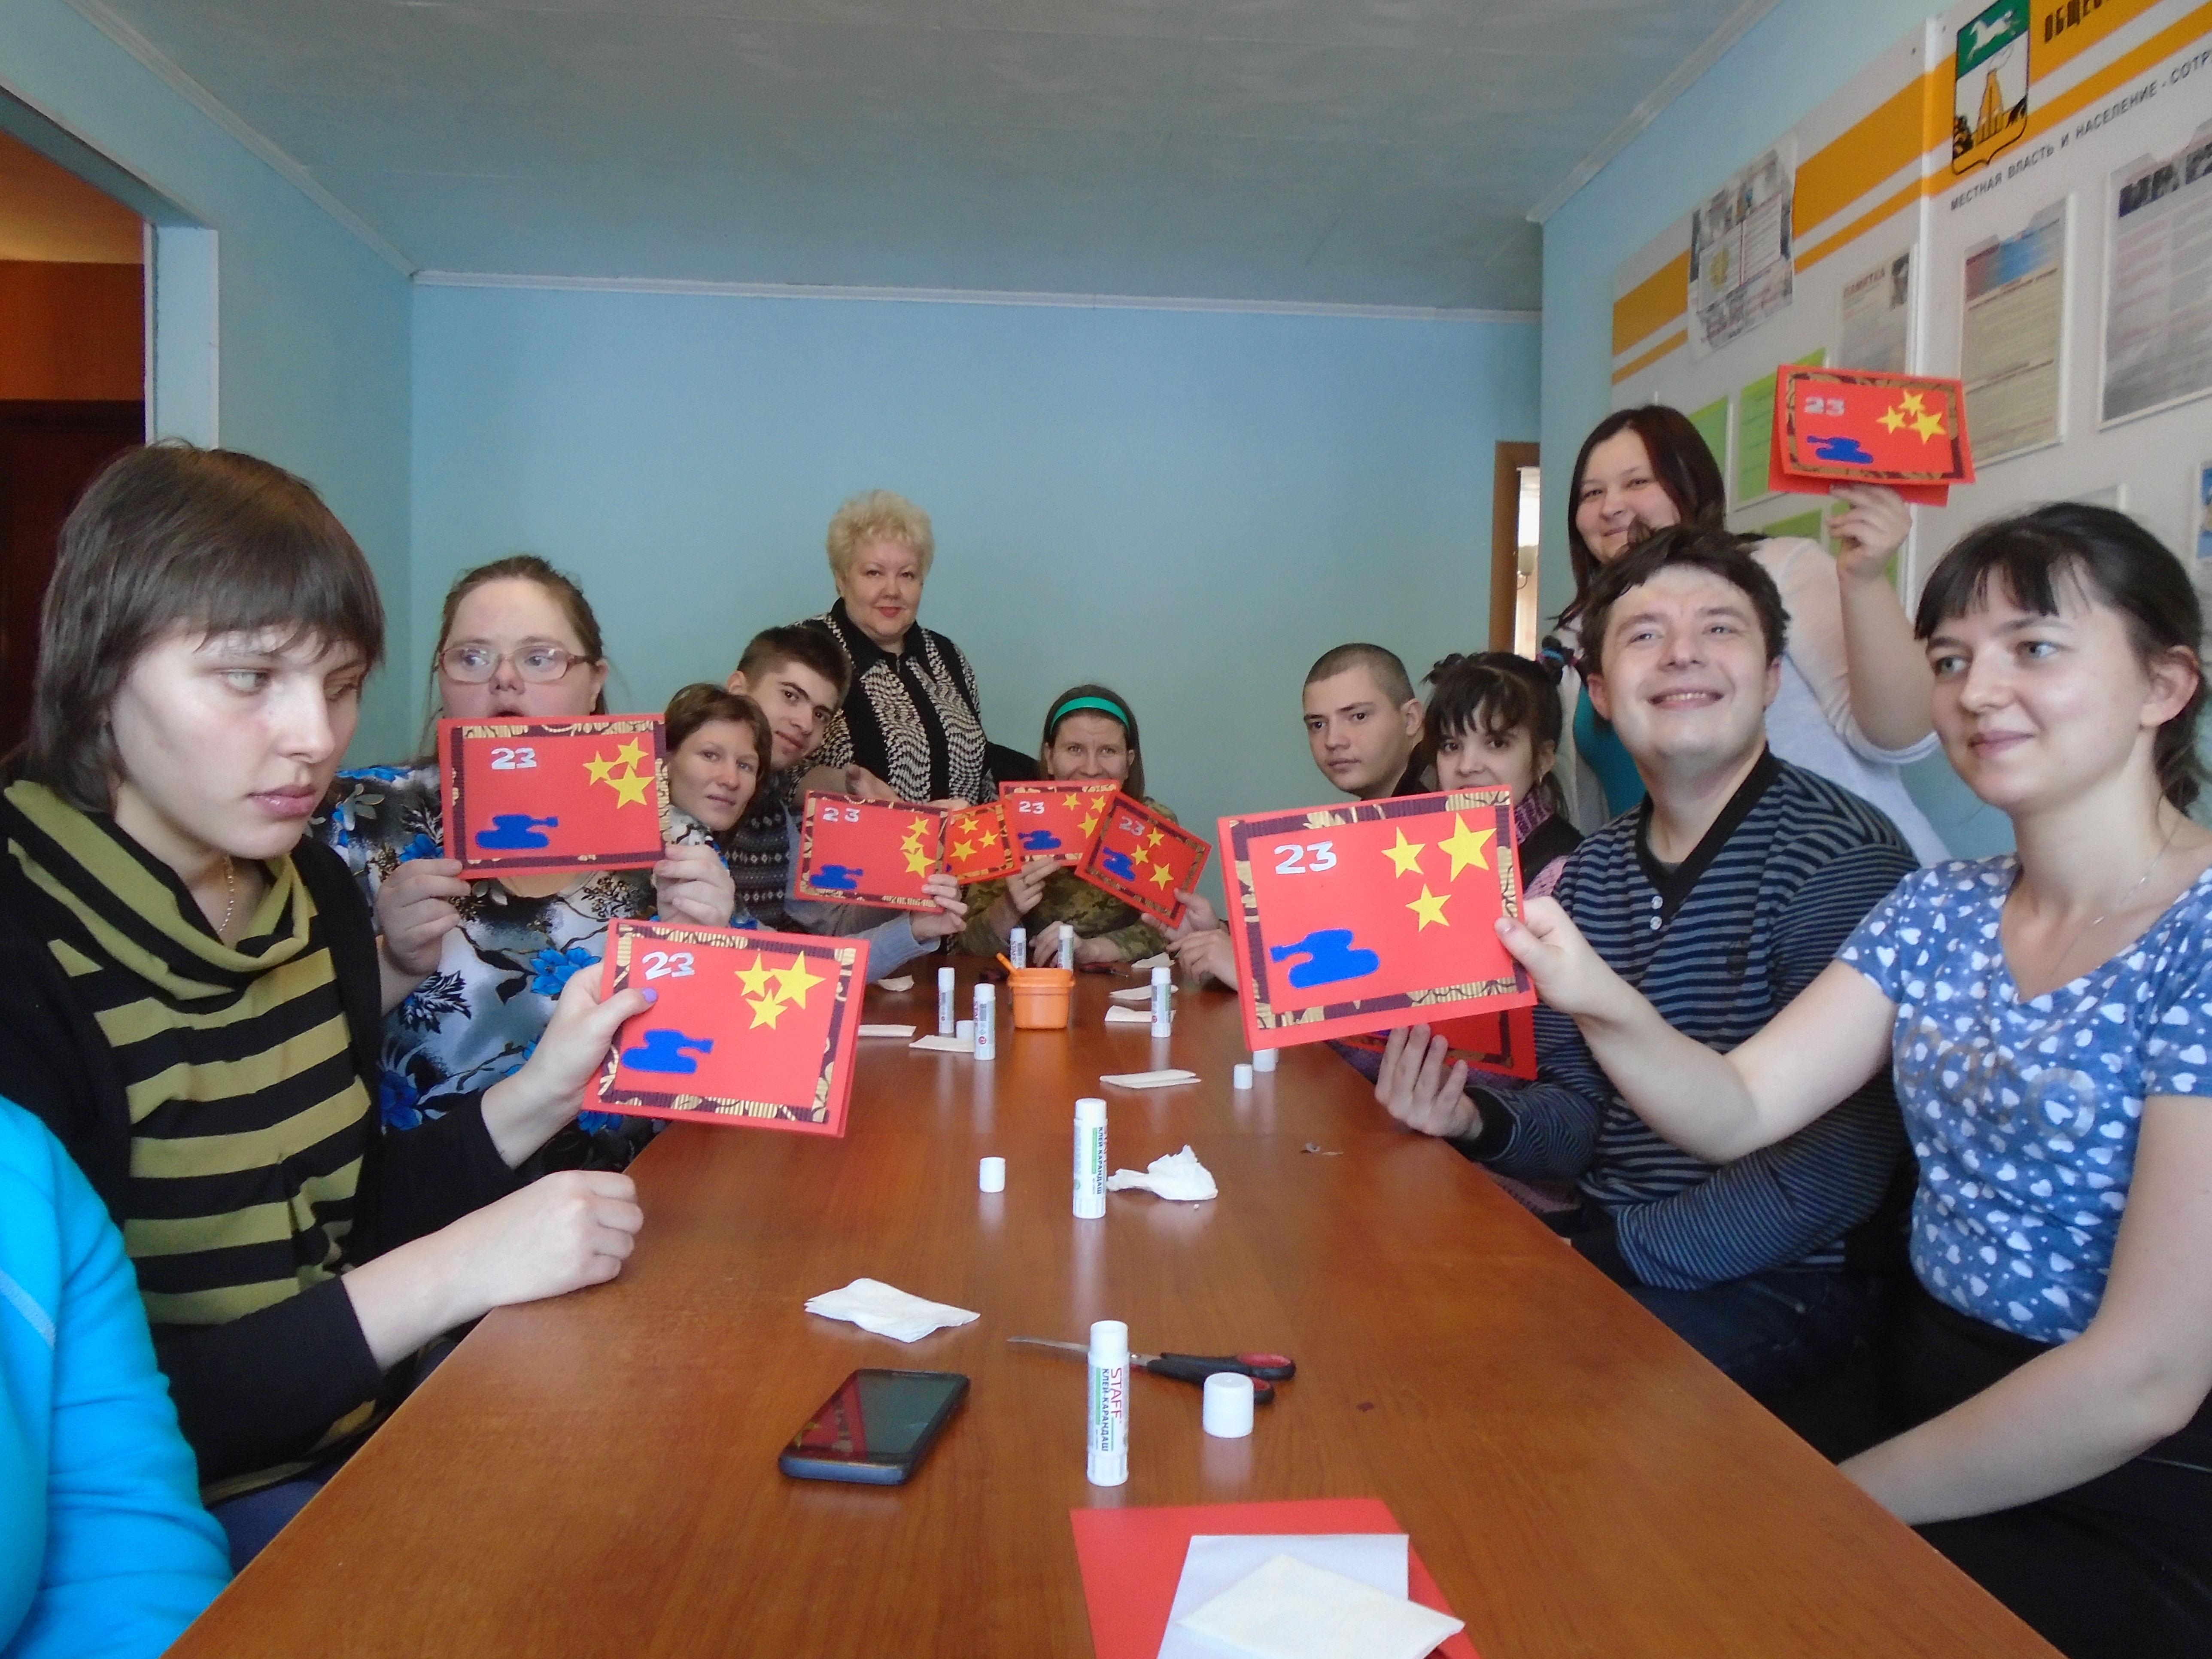 ТОС Матросовского микрорайона провел акцию «Подарок другу» для людей с ограниченными возможностями здоровья